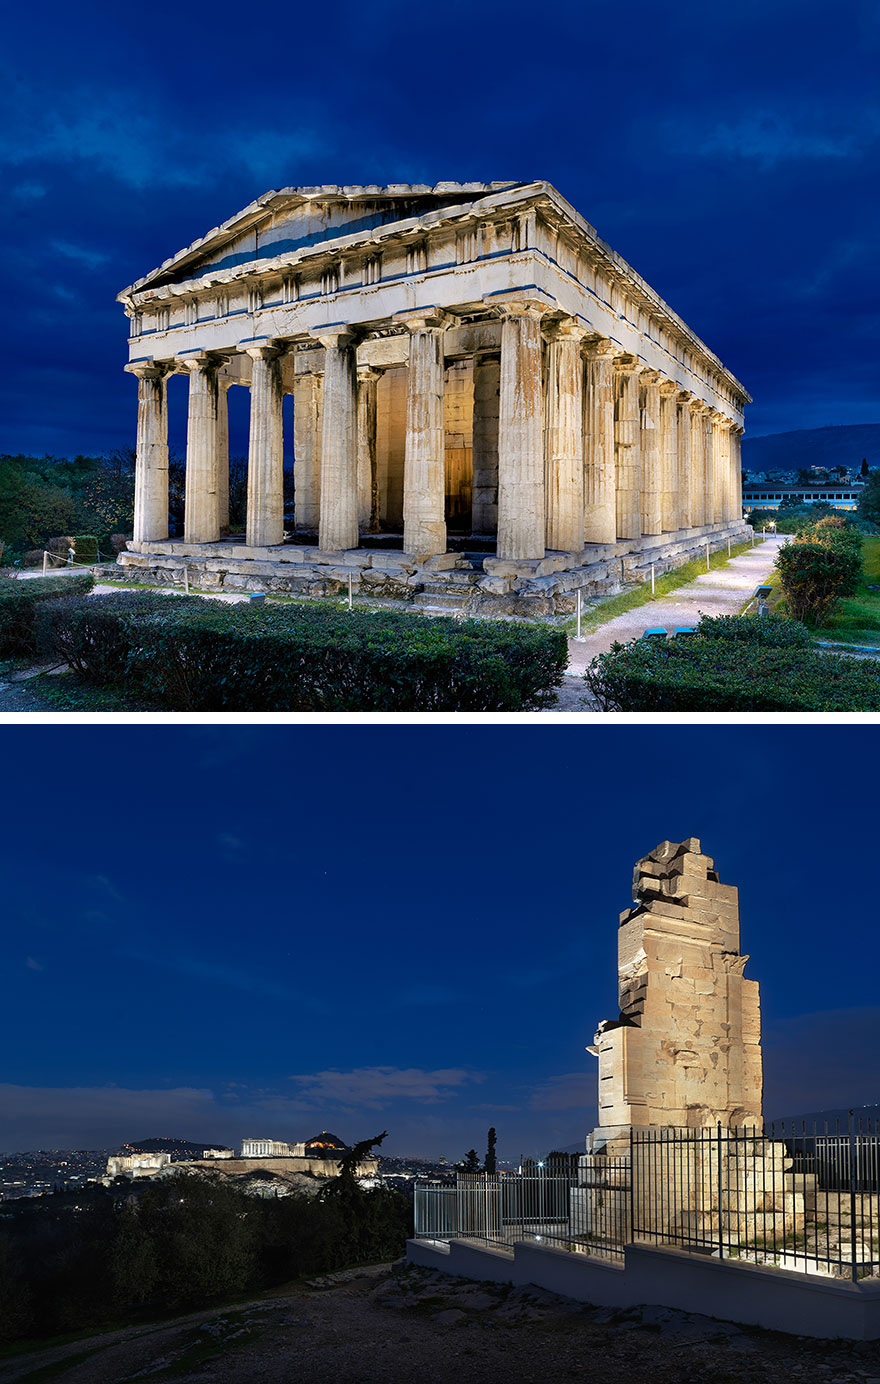 Κοινή η αισθητική προσέγγιση στον νέο φωτισμό για τον Ναό του Ηφαίστου και το Μνημείο του Φιλοπάππου